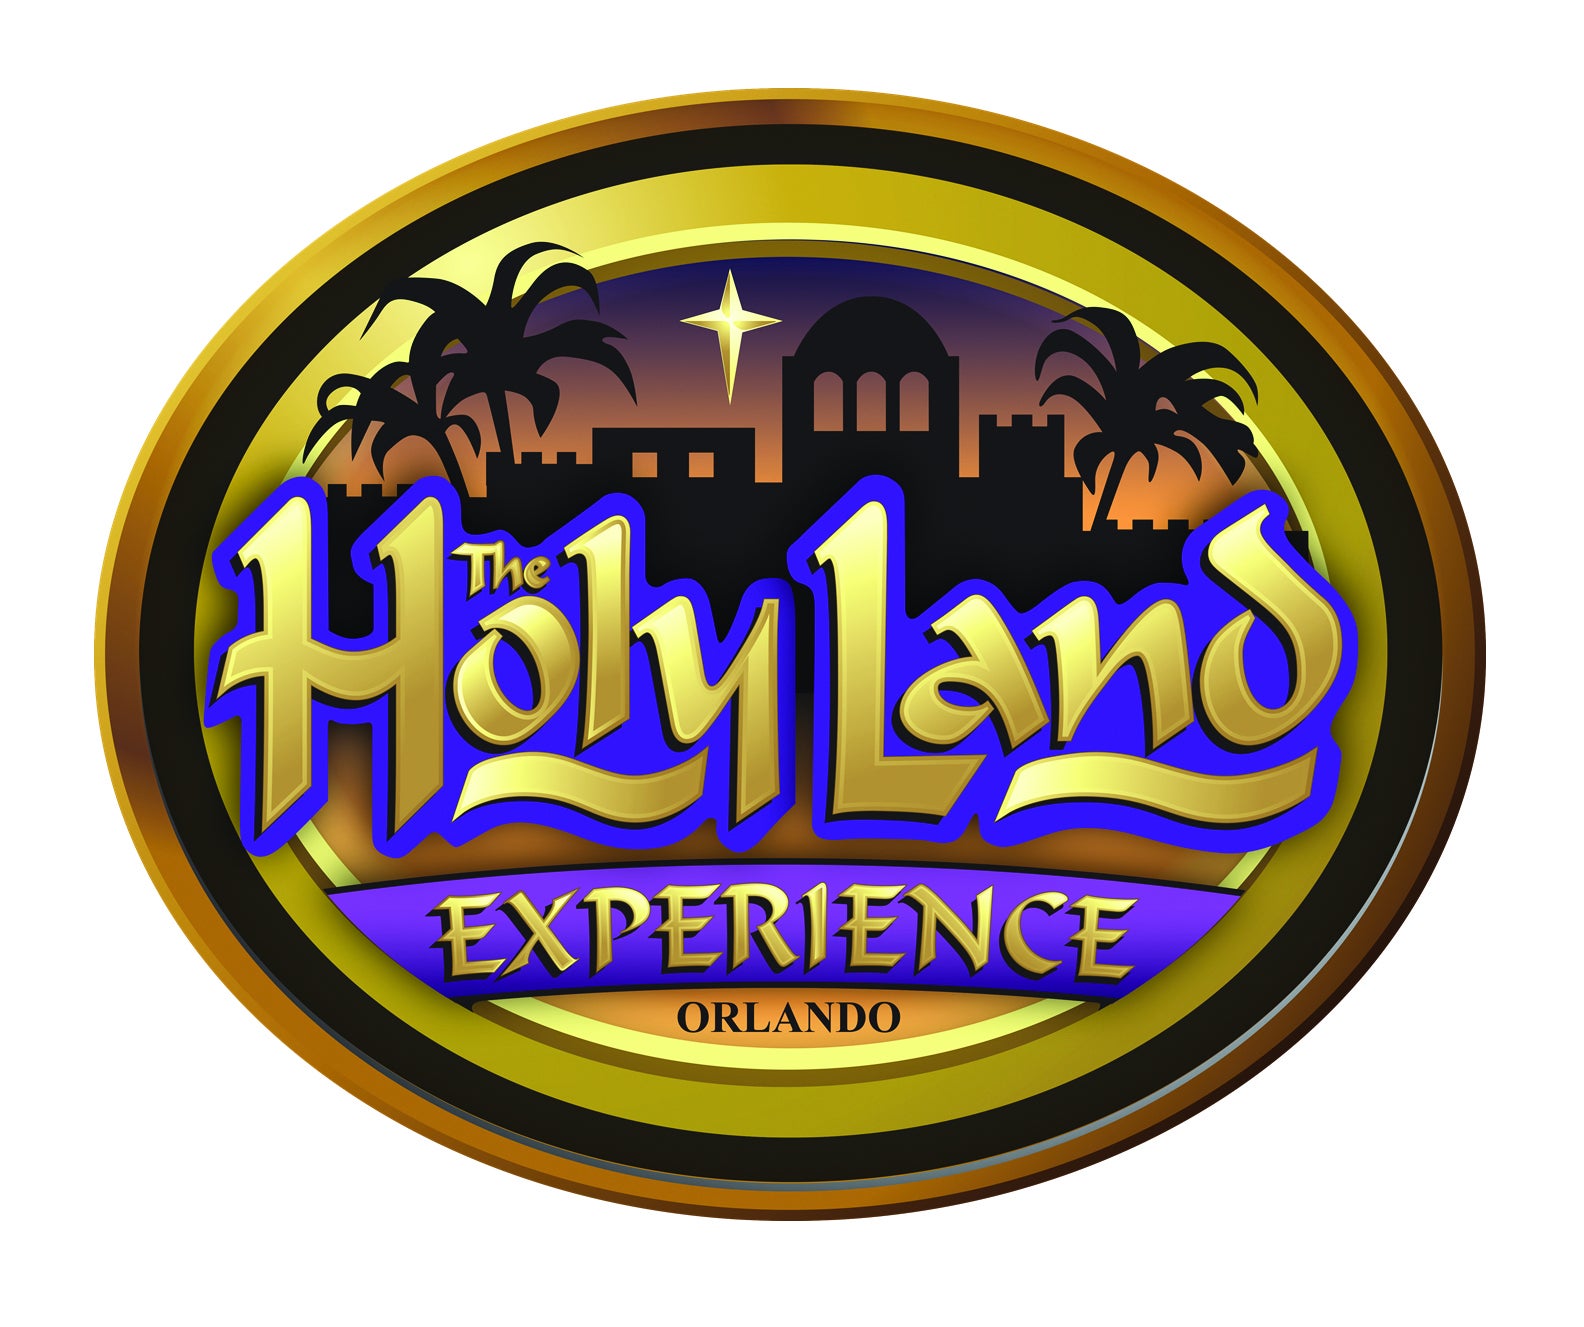 Holy Land Experience FaithandFamily Theme Park Announces Fresh New